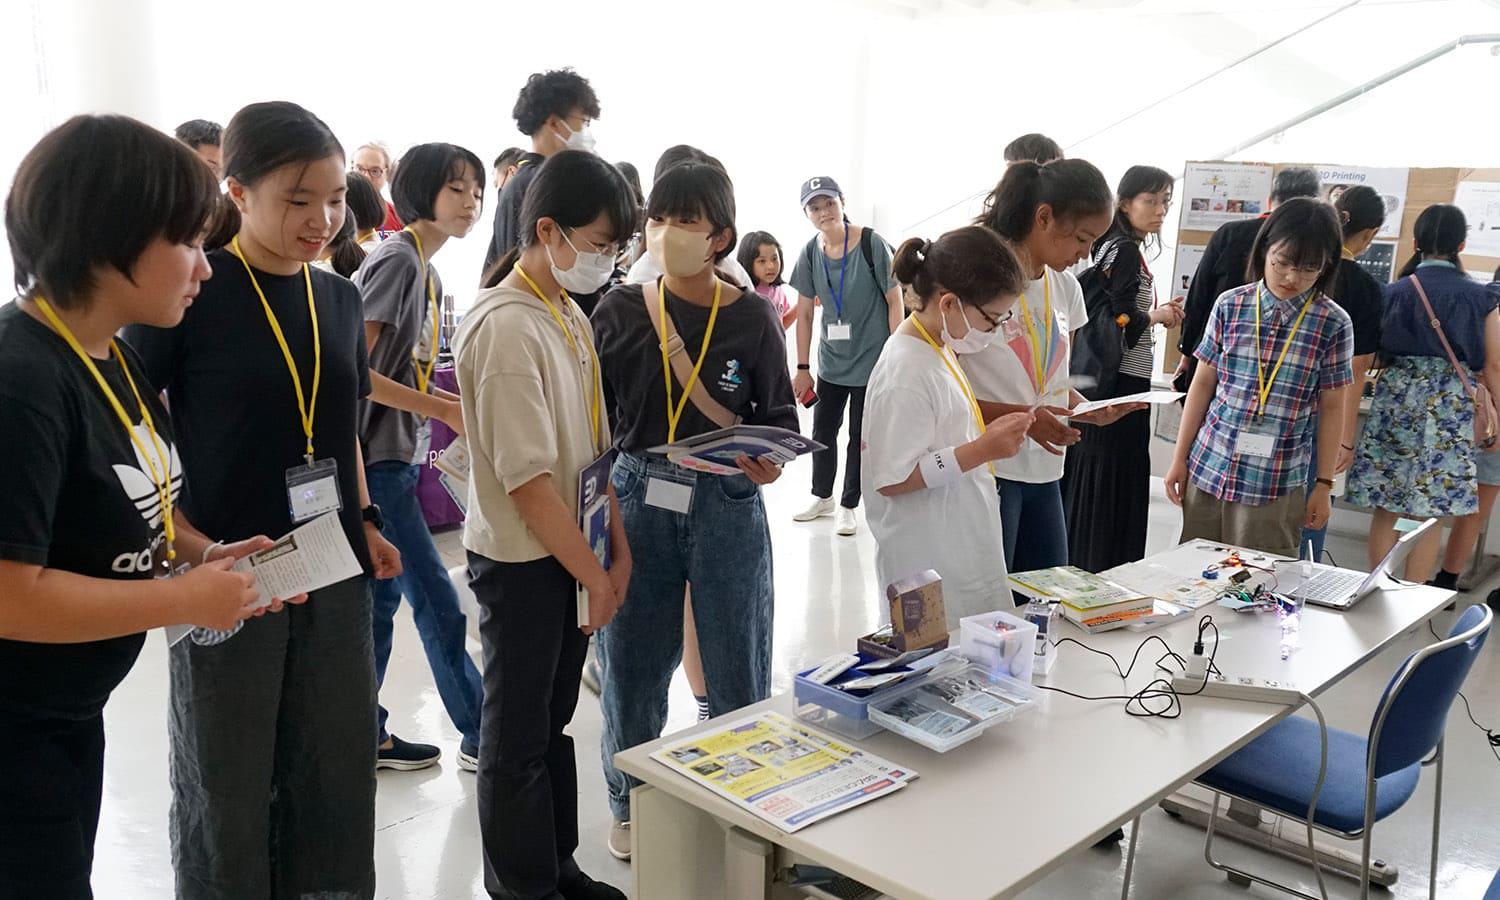 日本MIT会と東京工業大学が共催した女子児童生徒向けのSTEMワークショップのSTEMフェアにスペースブロックが展示されました